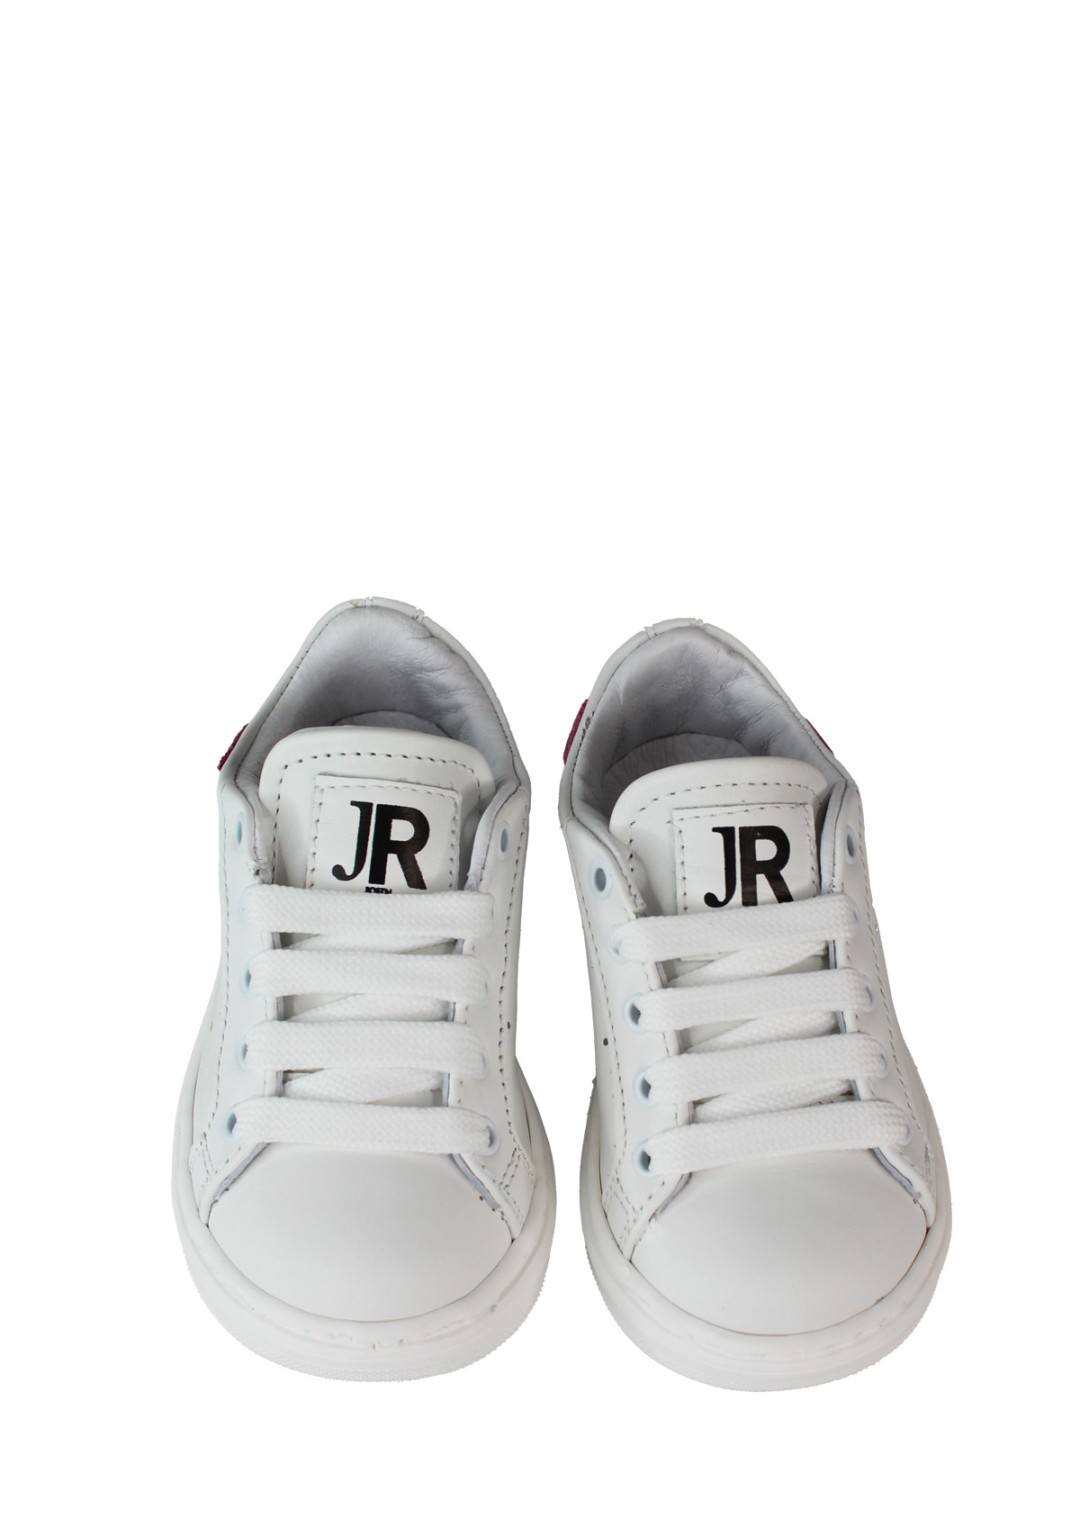 John Richmond - Sneaker Rip,Rosa - Bimba - 19201